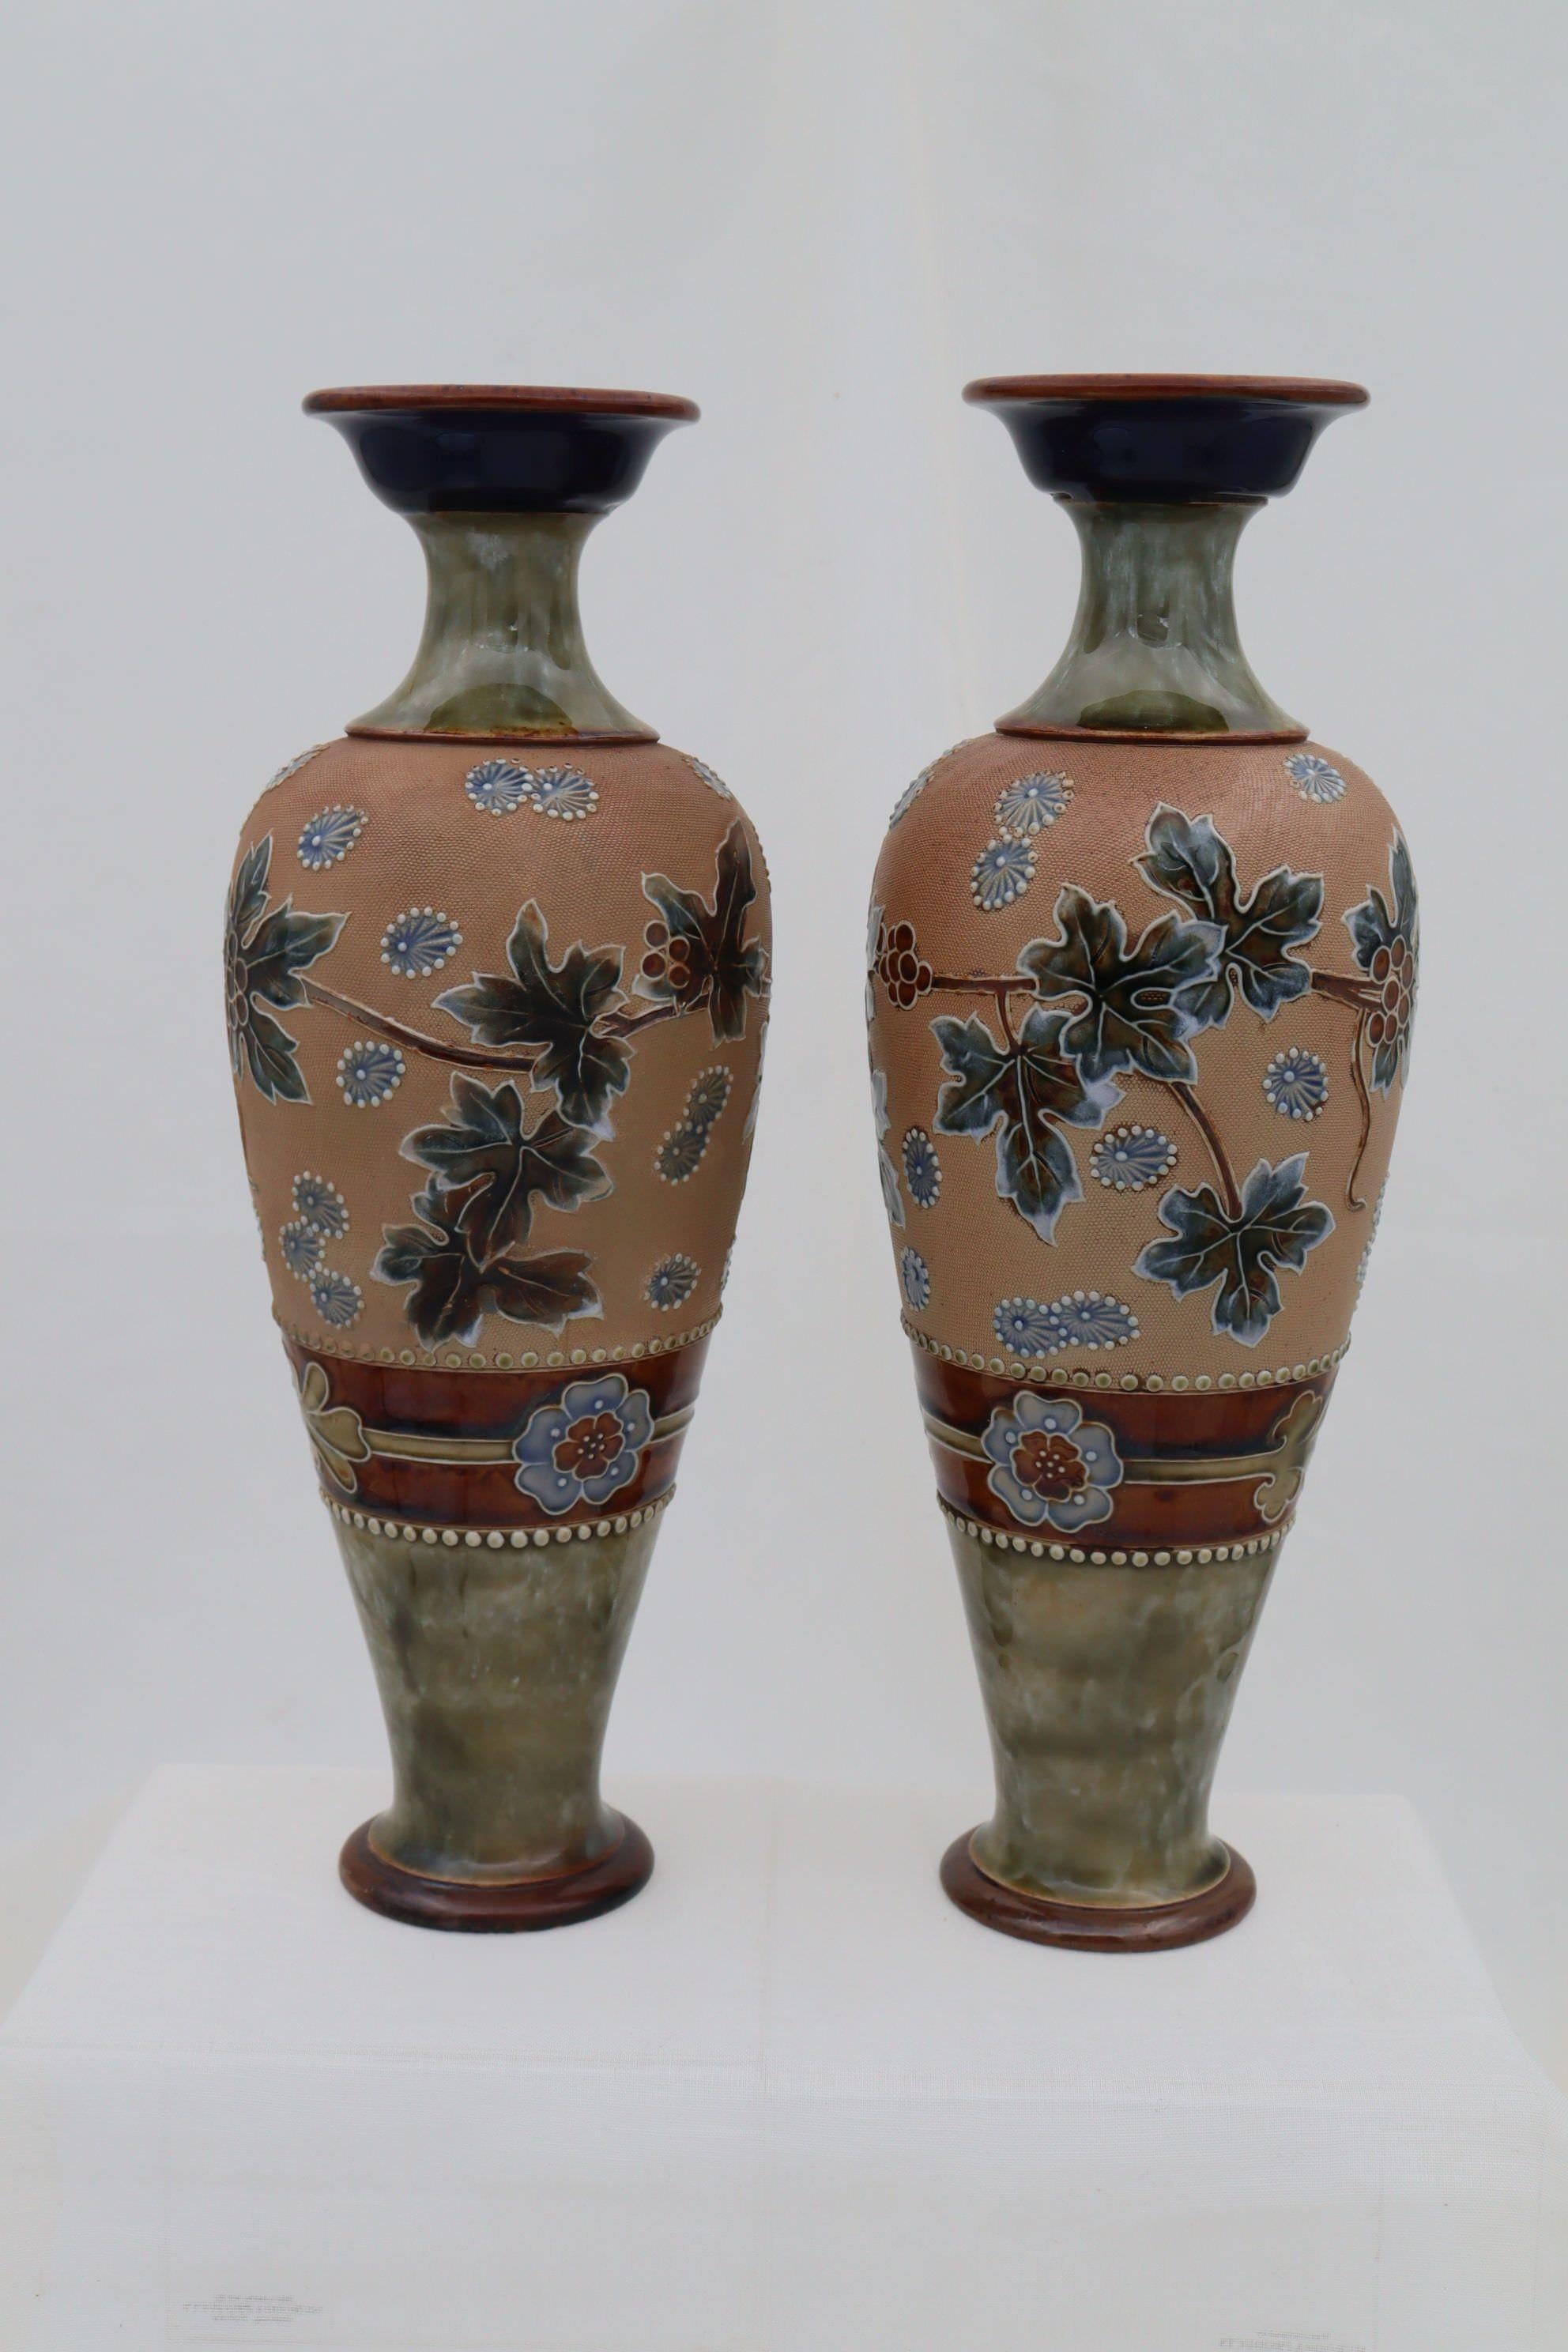 Cette paire de vases de forme balustre Royal Doulton est décorée selon la méthode Chine Ware brevetée par Doulton. Le brevet Doulton et Slaters, également connu sous le nom de Chine Ware, est un procédé de décoration qui consiste à presser des